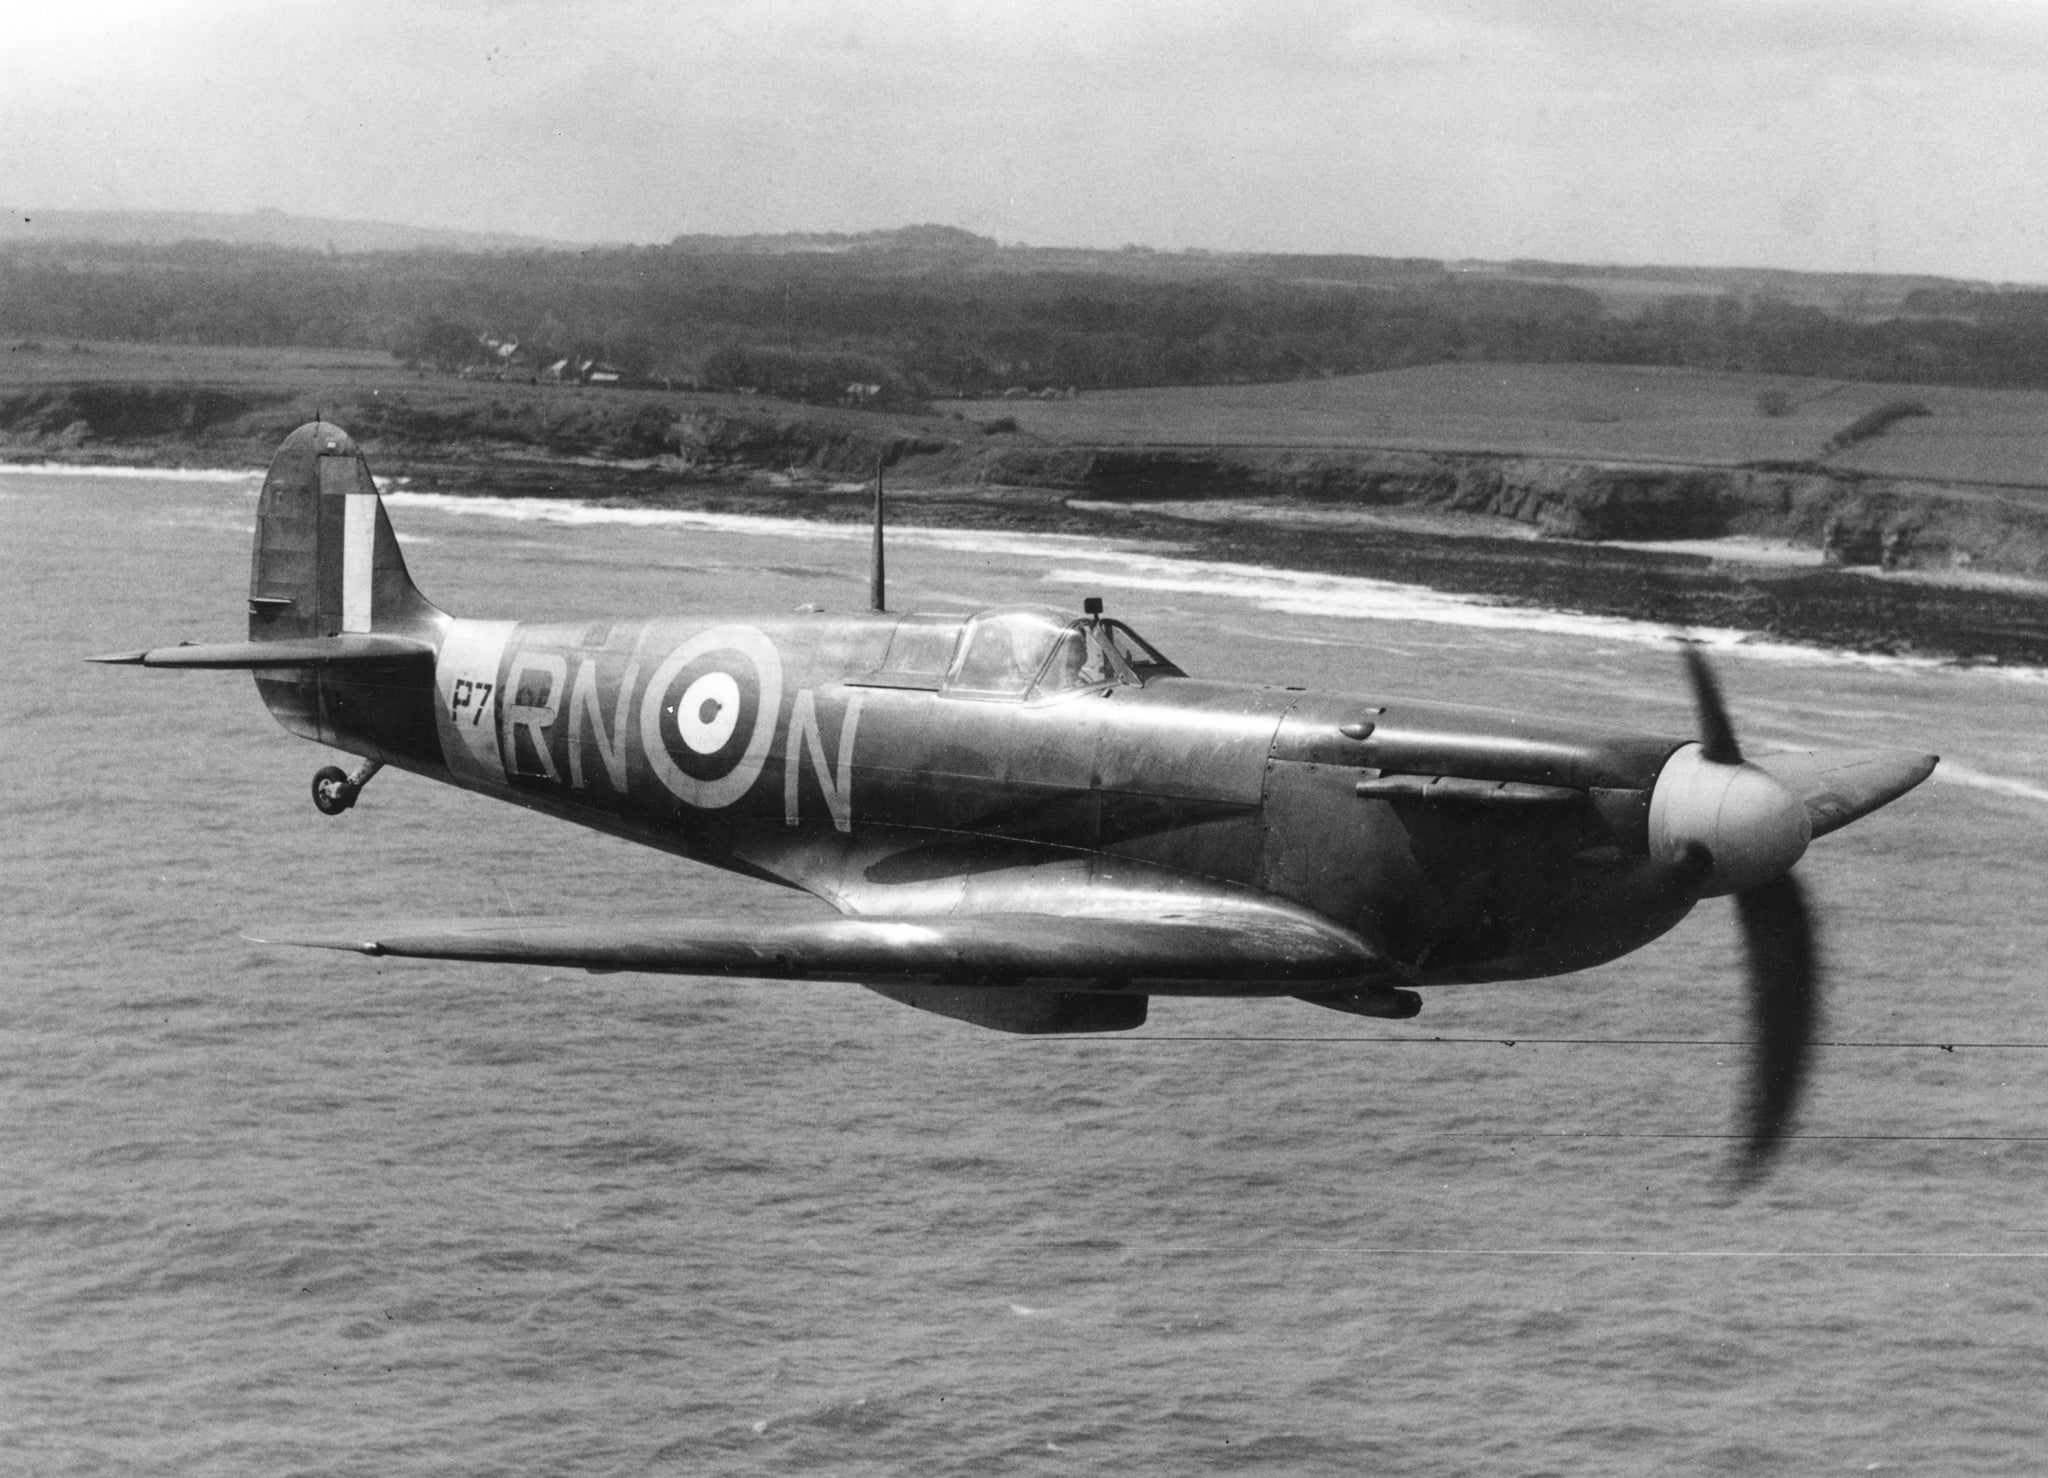 A 1941 Spitfire